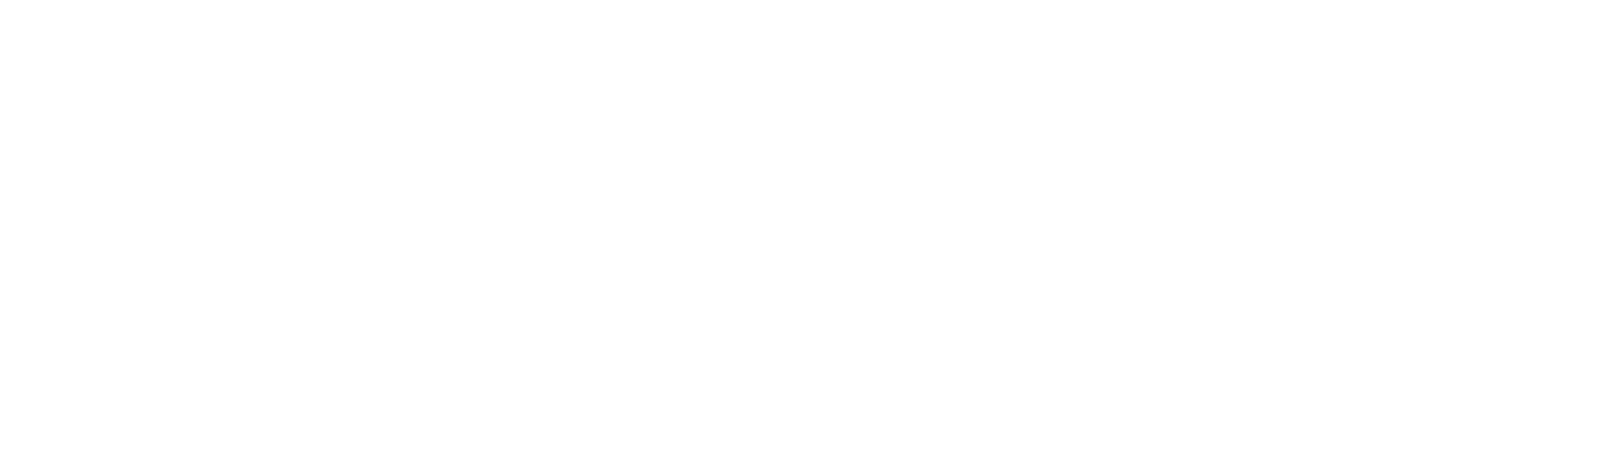 Embark Technology
 logo large for dark backgrounds (transparent PNG)